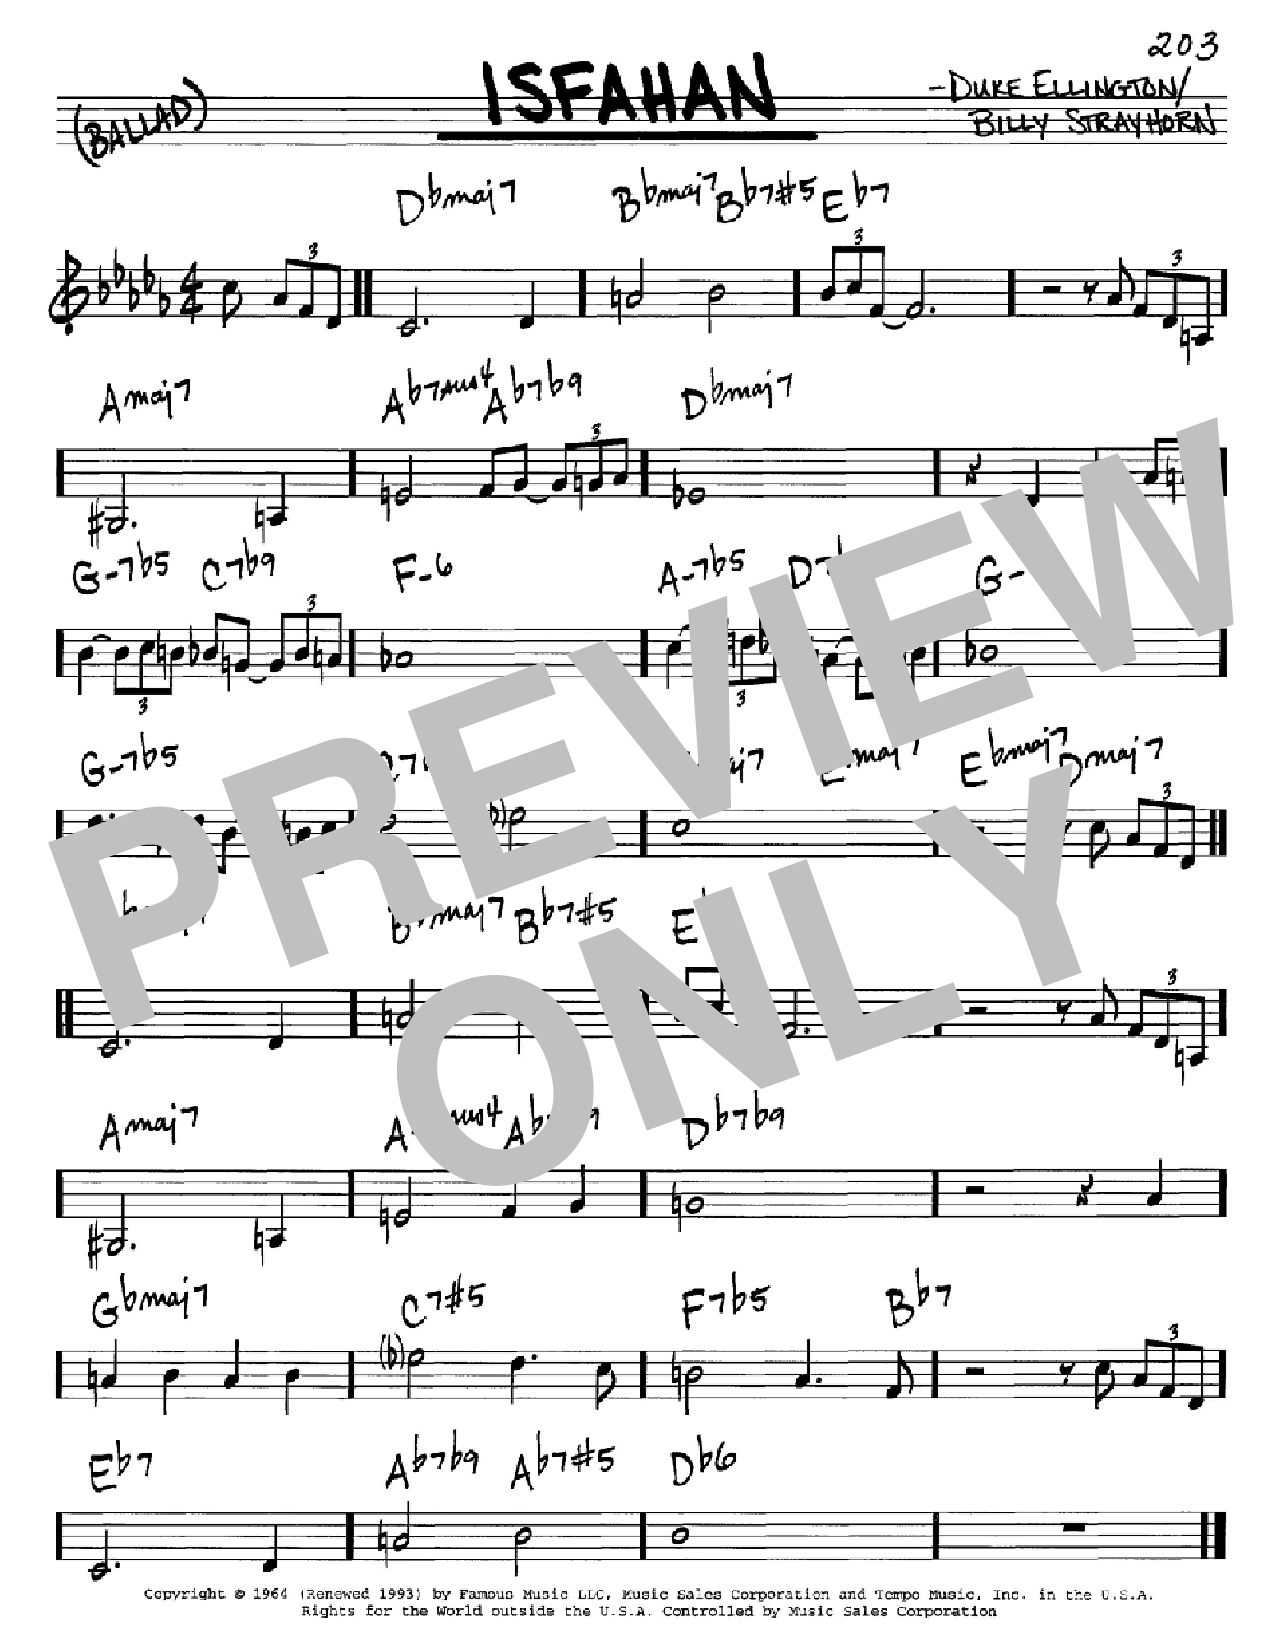 Download Duke Ellington Isfahan Sheet Music